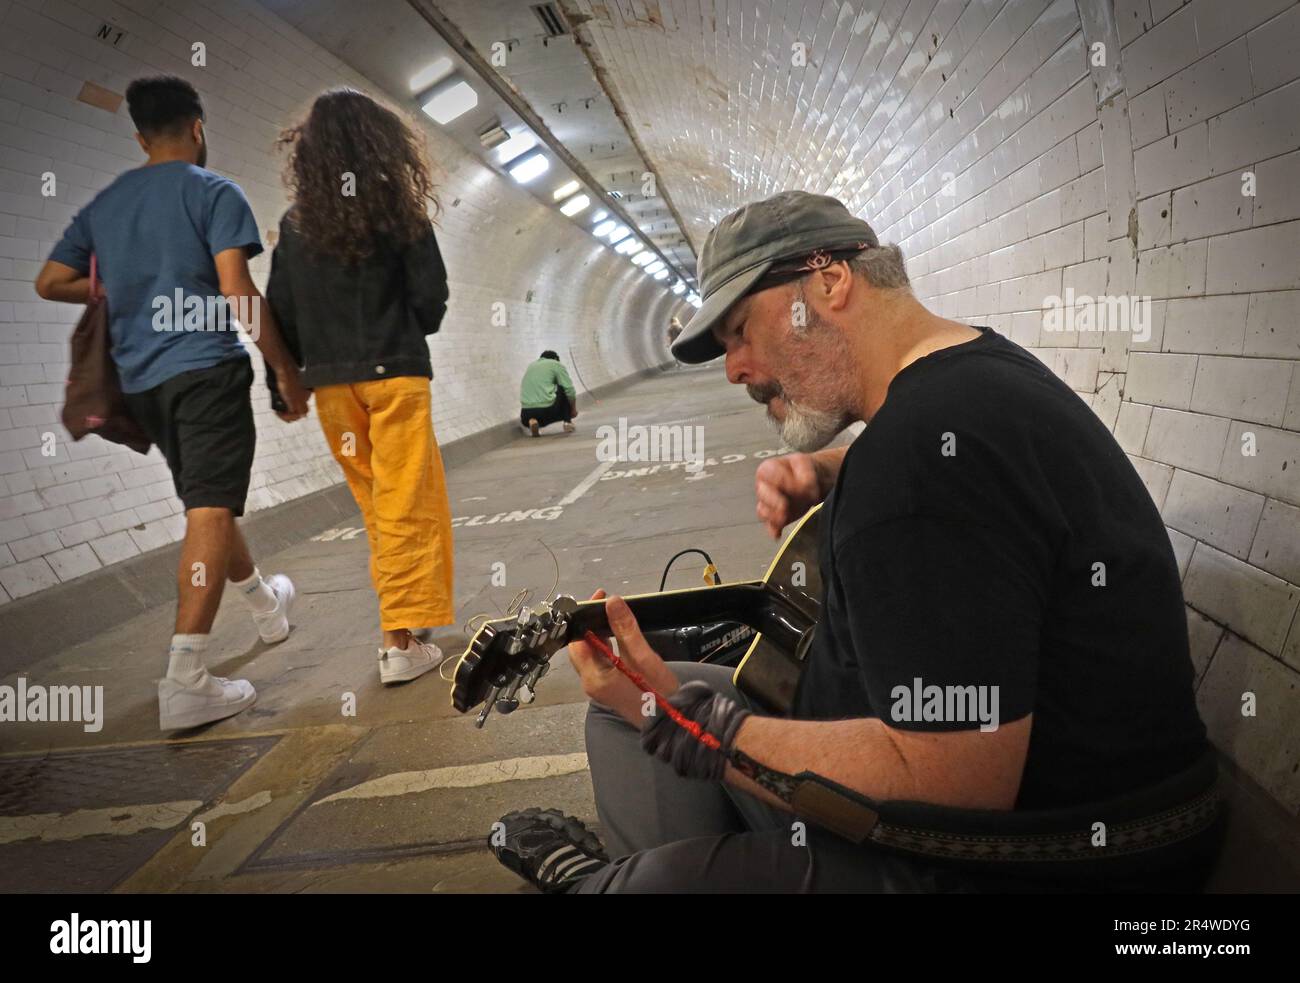 Busker nel tunnel a piedi del Tamigi di Greenwich, divertenti camminatori che vanno da Greenwich all'Isola di Dogs, Londra est, Inghilterra, Regno Unito, SE10 9HT Foto Stock